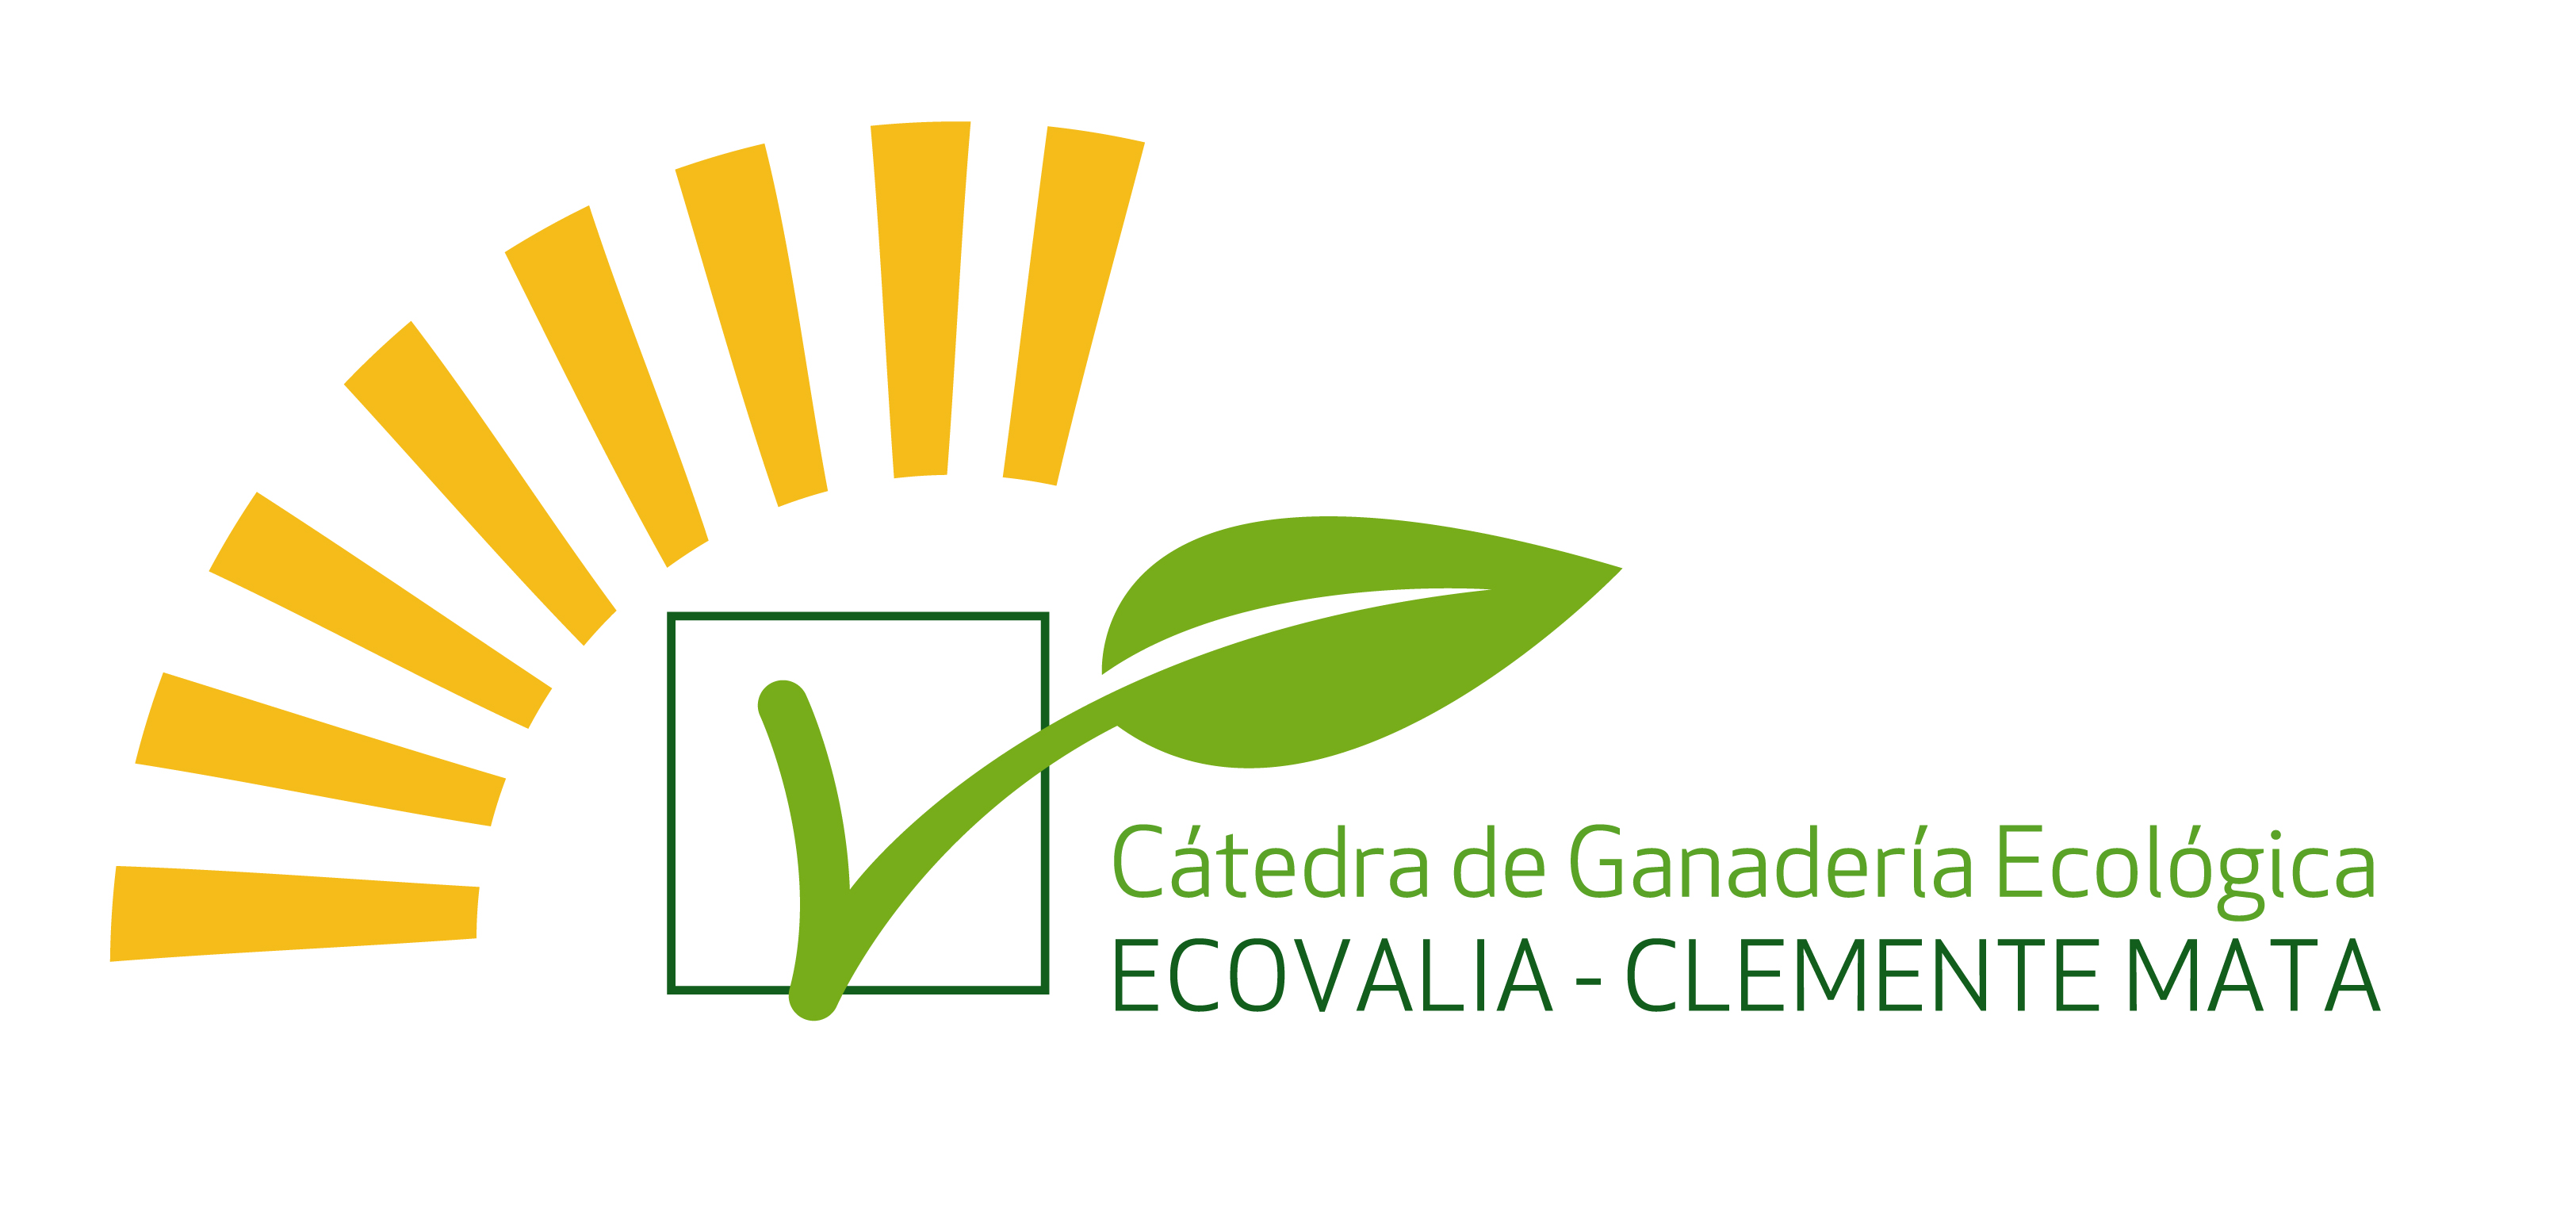 Cátedra de Producción Ecológica Ecovalia-Clemente Mata